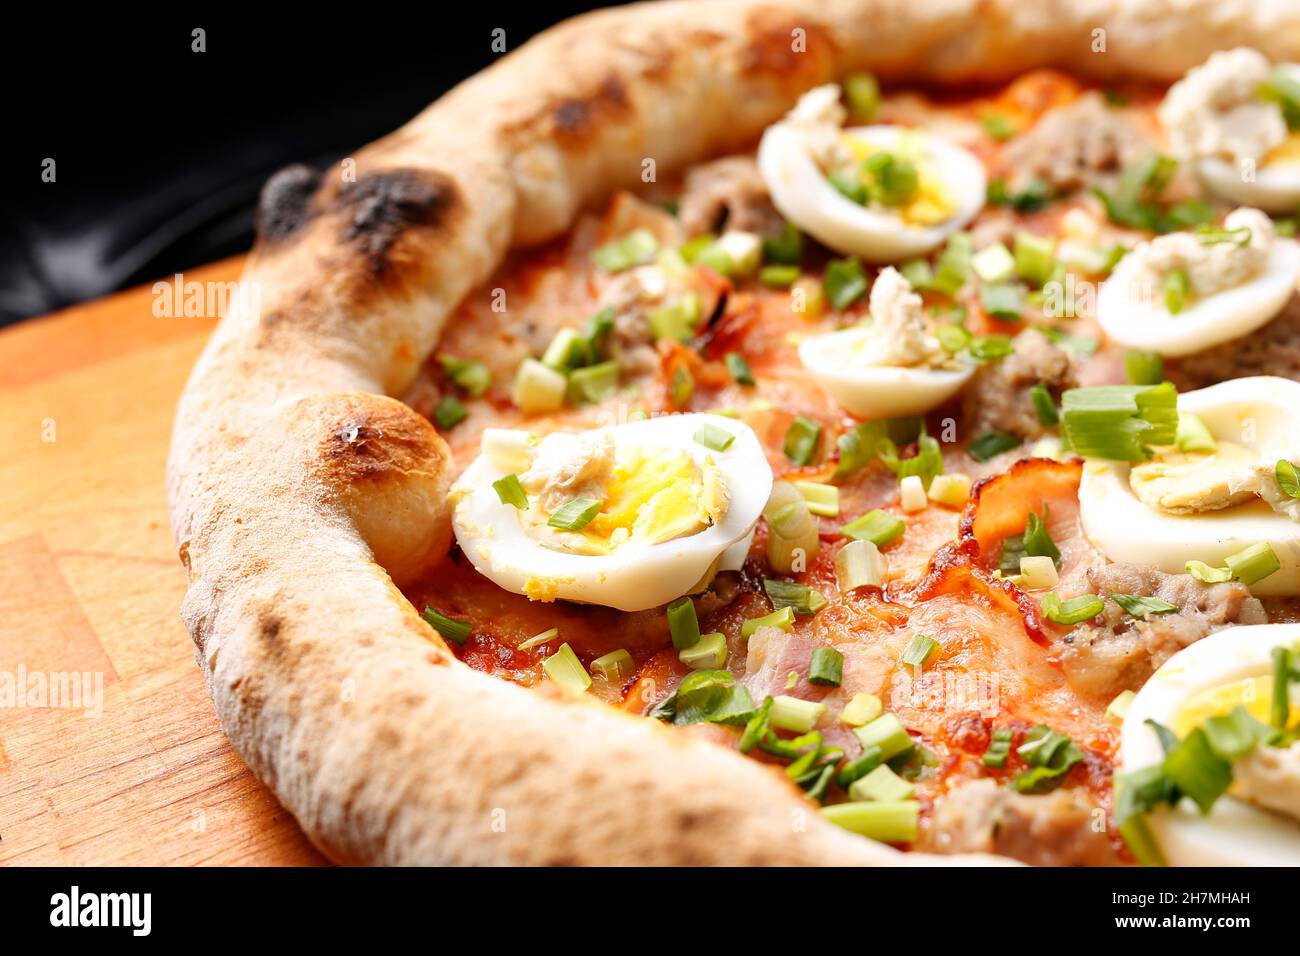 Pizza mit Speck, Ei und grünem Schnittlauch. Ein leckeres Gericht.kulinarische Fotografie. Vorschlag, das Gericht zu servieren. Stockfoto